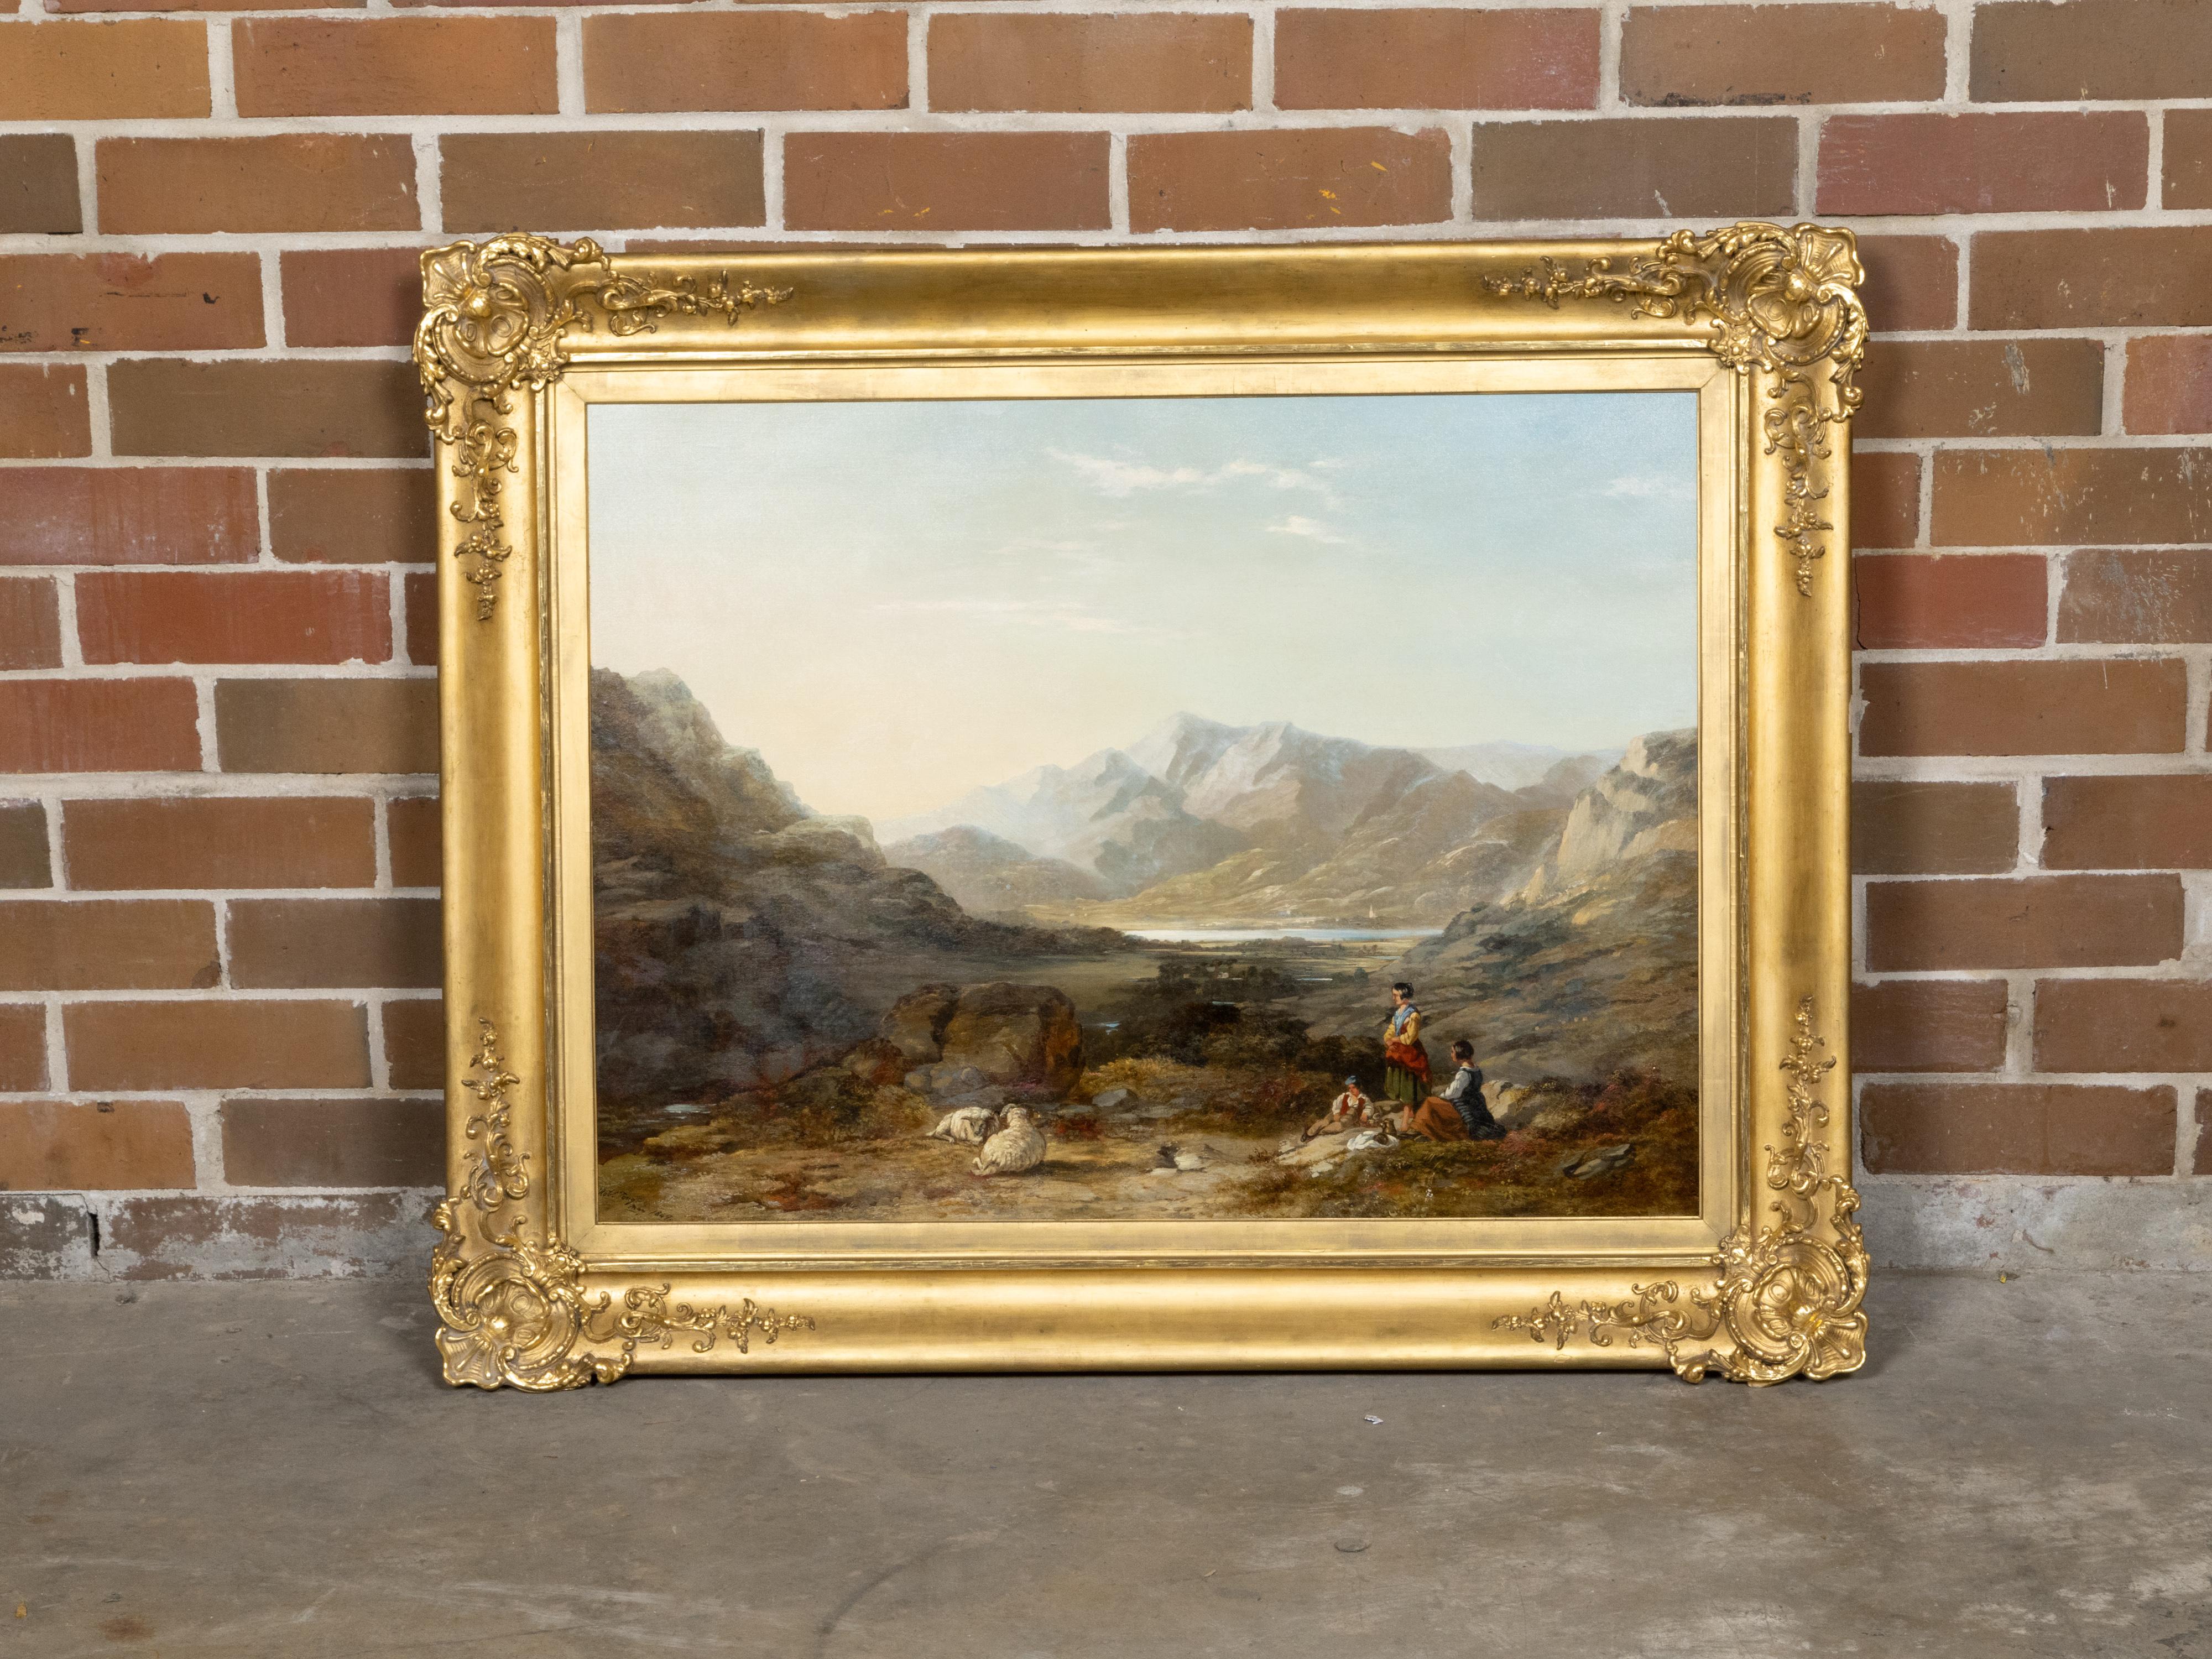 Peinture de paysage à l'huile sur toile datant de 1847 environ, signée et datée, du peintre britannique Robert Tonge (1823 - 1856), représentant des voyageurs et des moutons dans un paysage avec un lac et des montagnes à l'arrière-plan. Cette